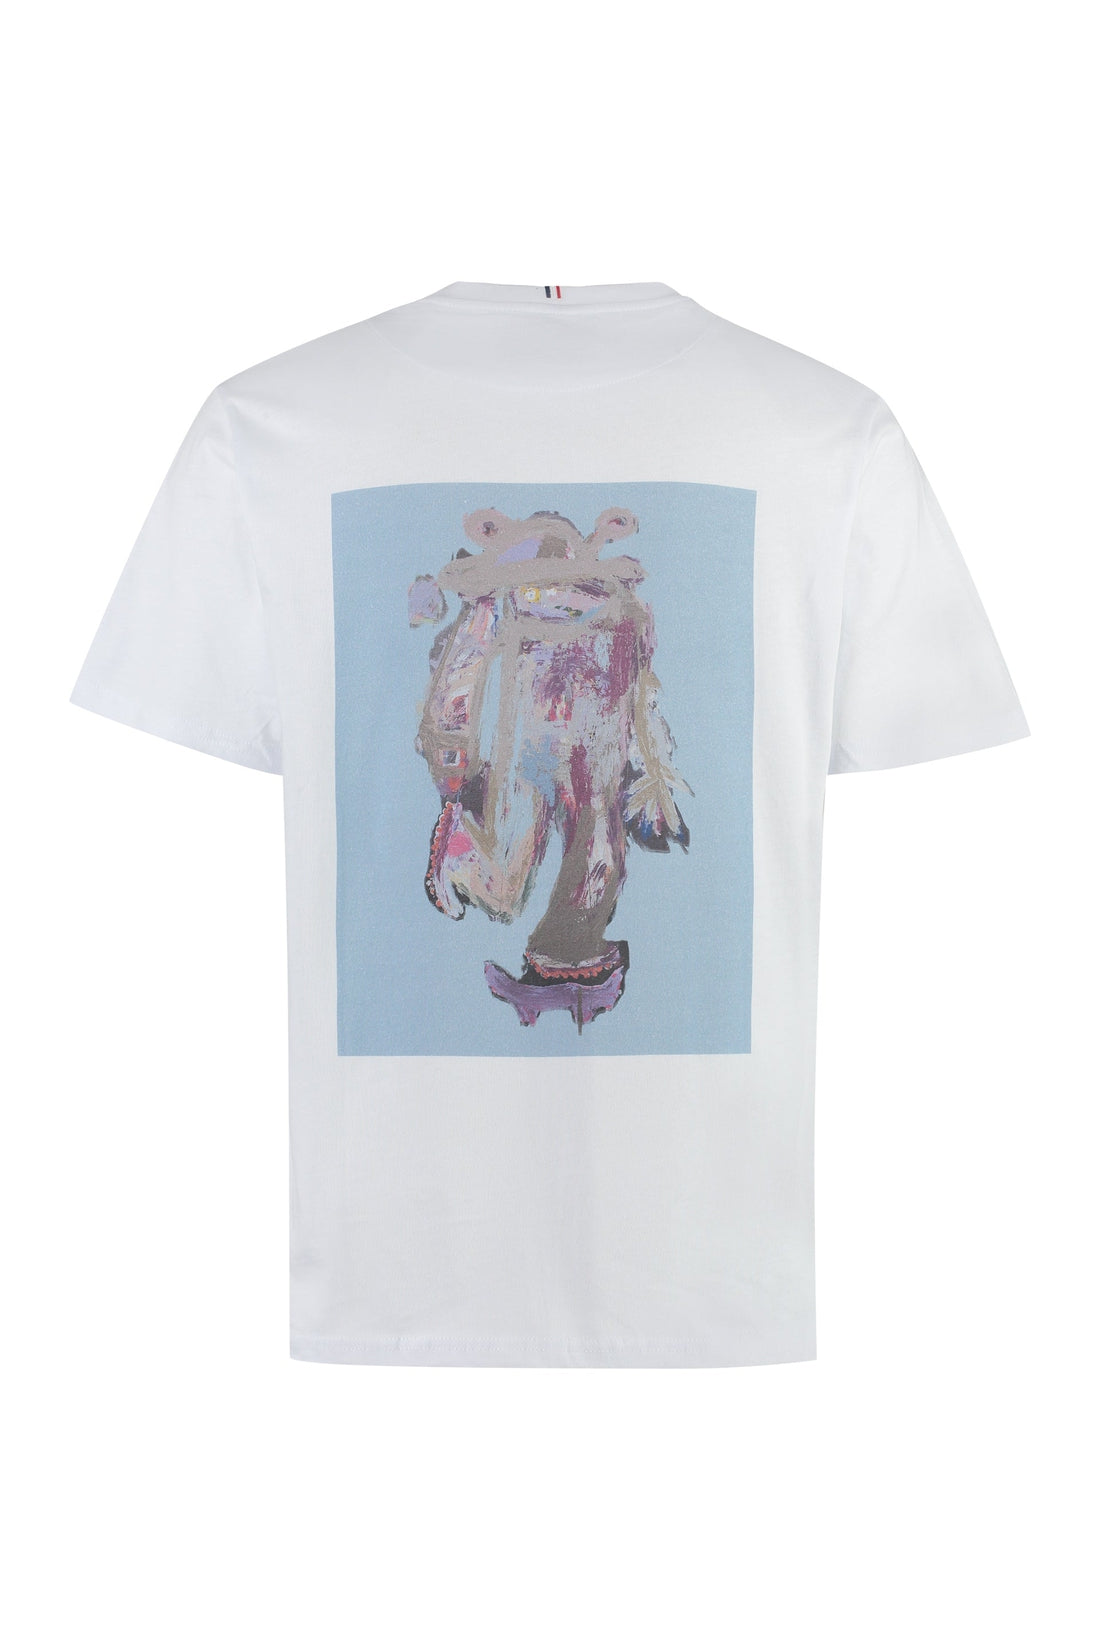 Les Deux-OUTLET-SALE-Kabangu X Les Deux - Printed cotton T-shirt-ARCHIVIST